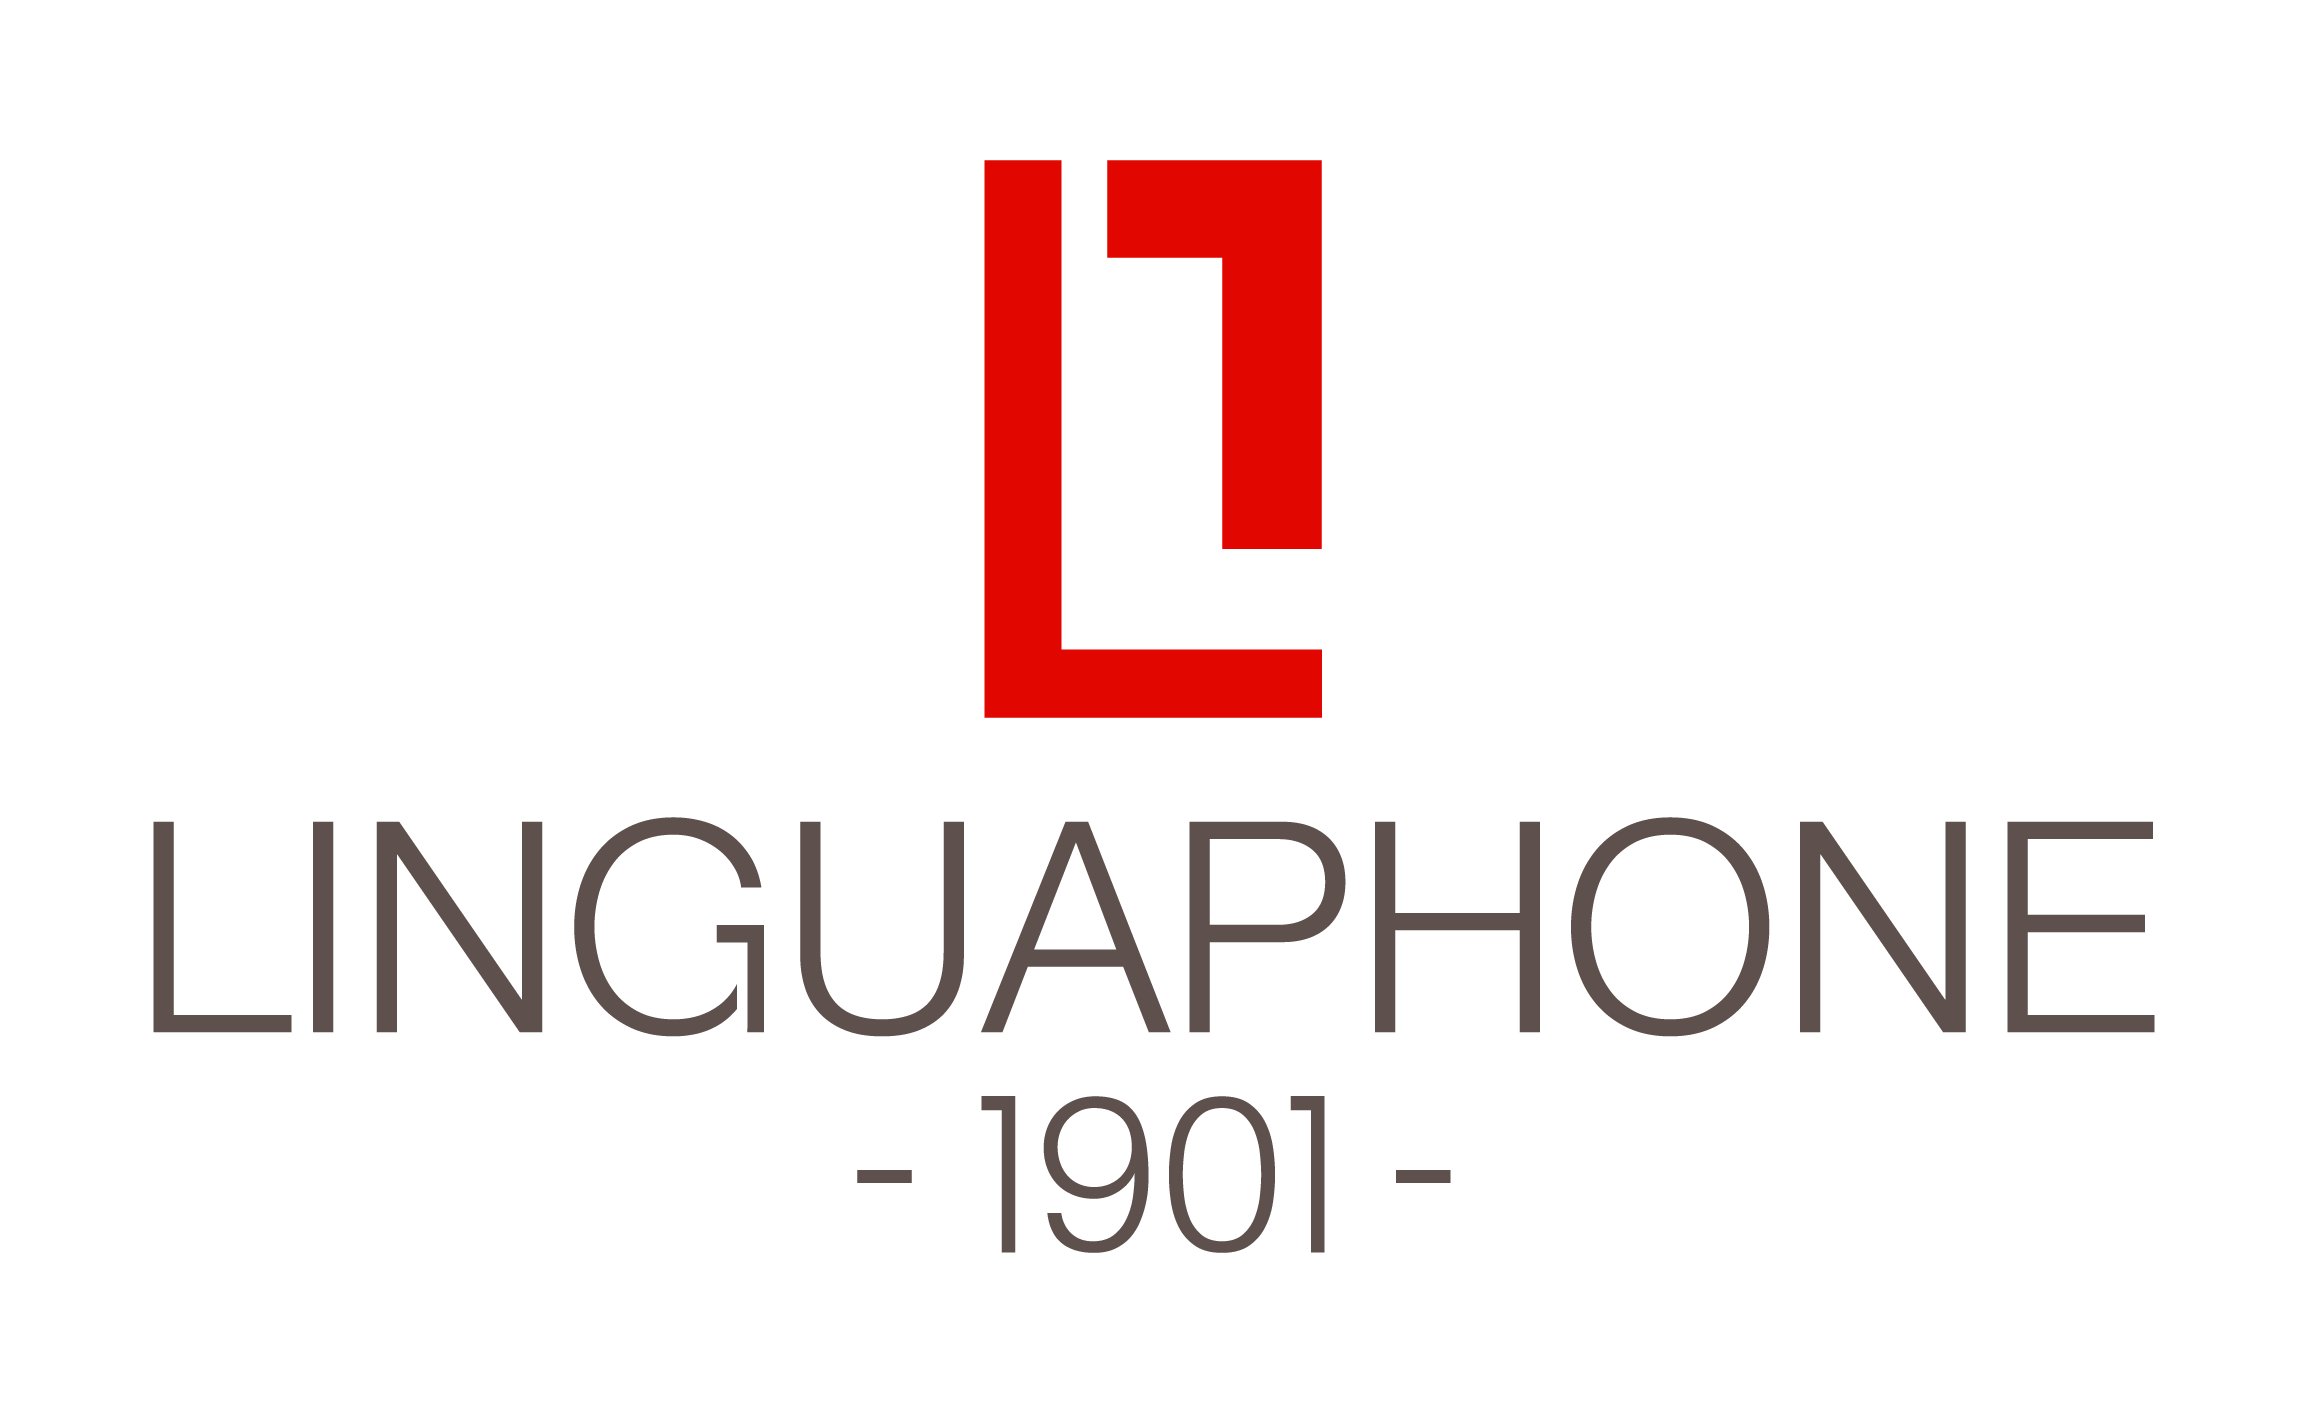 Linguaphone